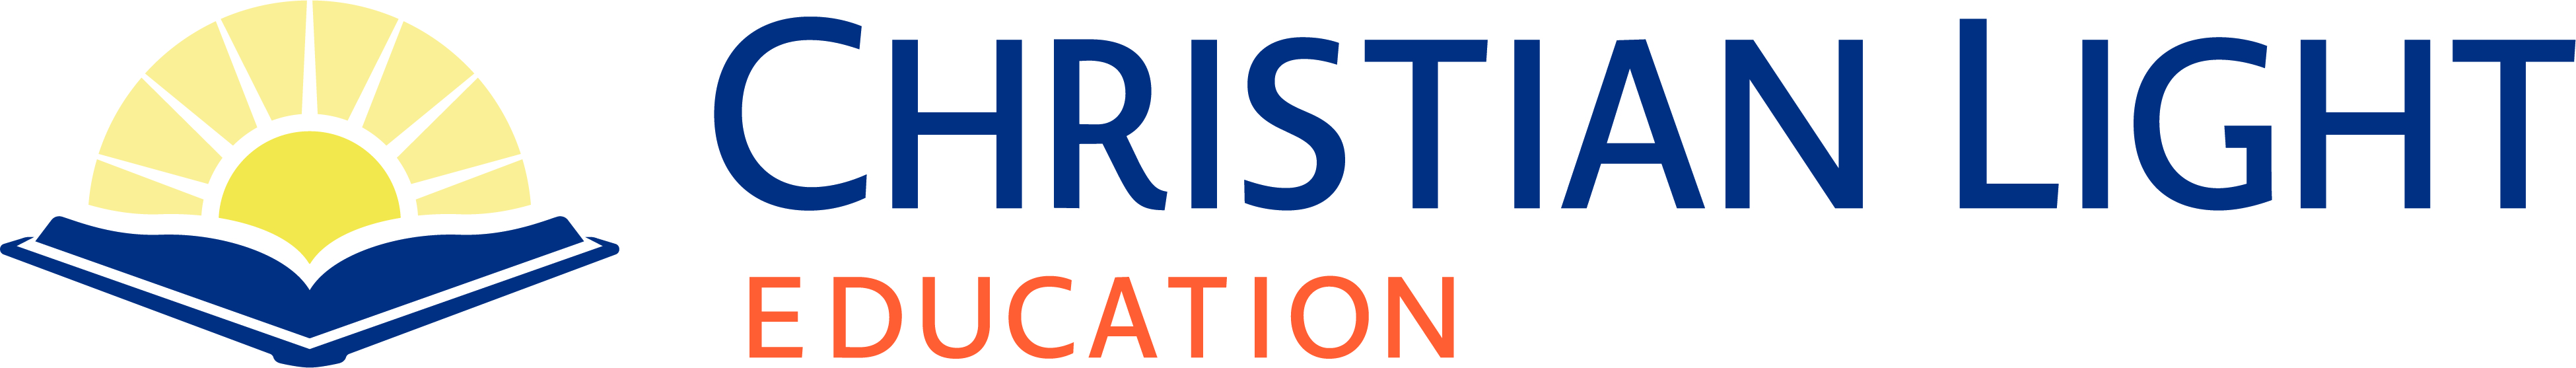 Christian Light Education logo